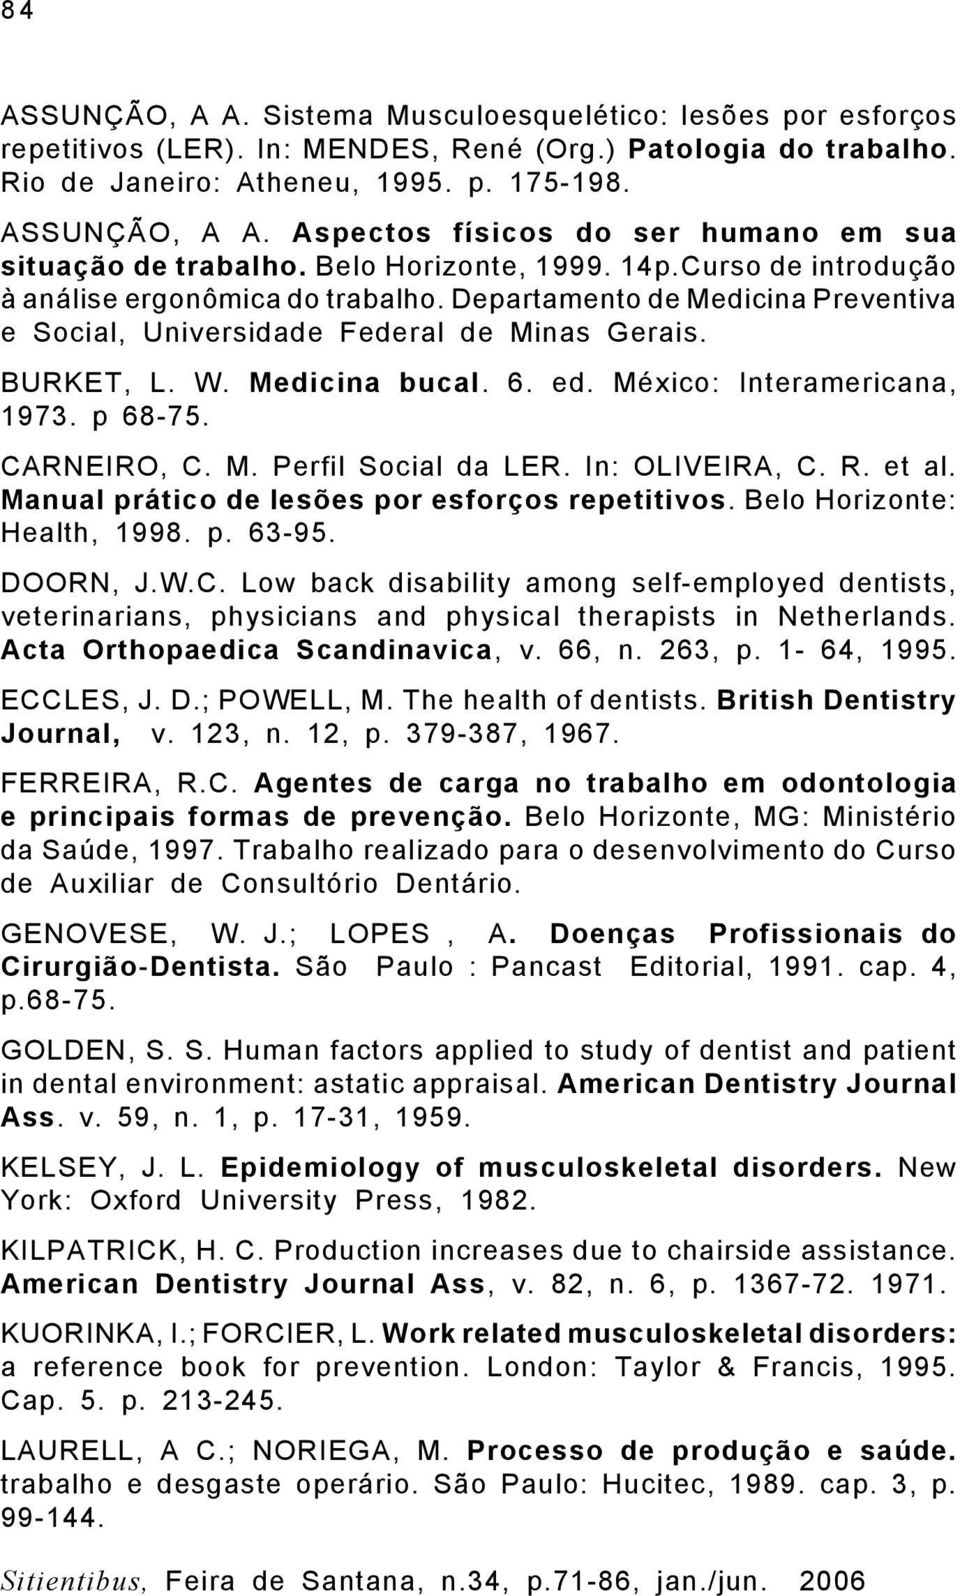 México: Interamericana, 1973. p 68-75. CARNEIRO, C. M. Perfil Social da LER. In: OLIVEIRA, C. R. et al. Manual prático de lesões por esforços repetitivos. Belo Horizonte: Health, 1998. p. 63-95.